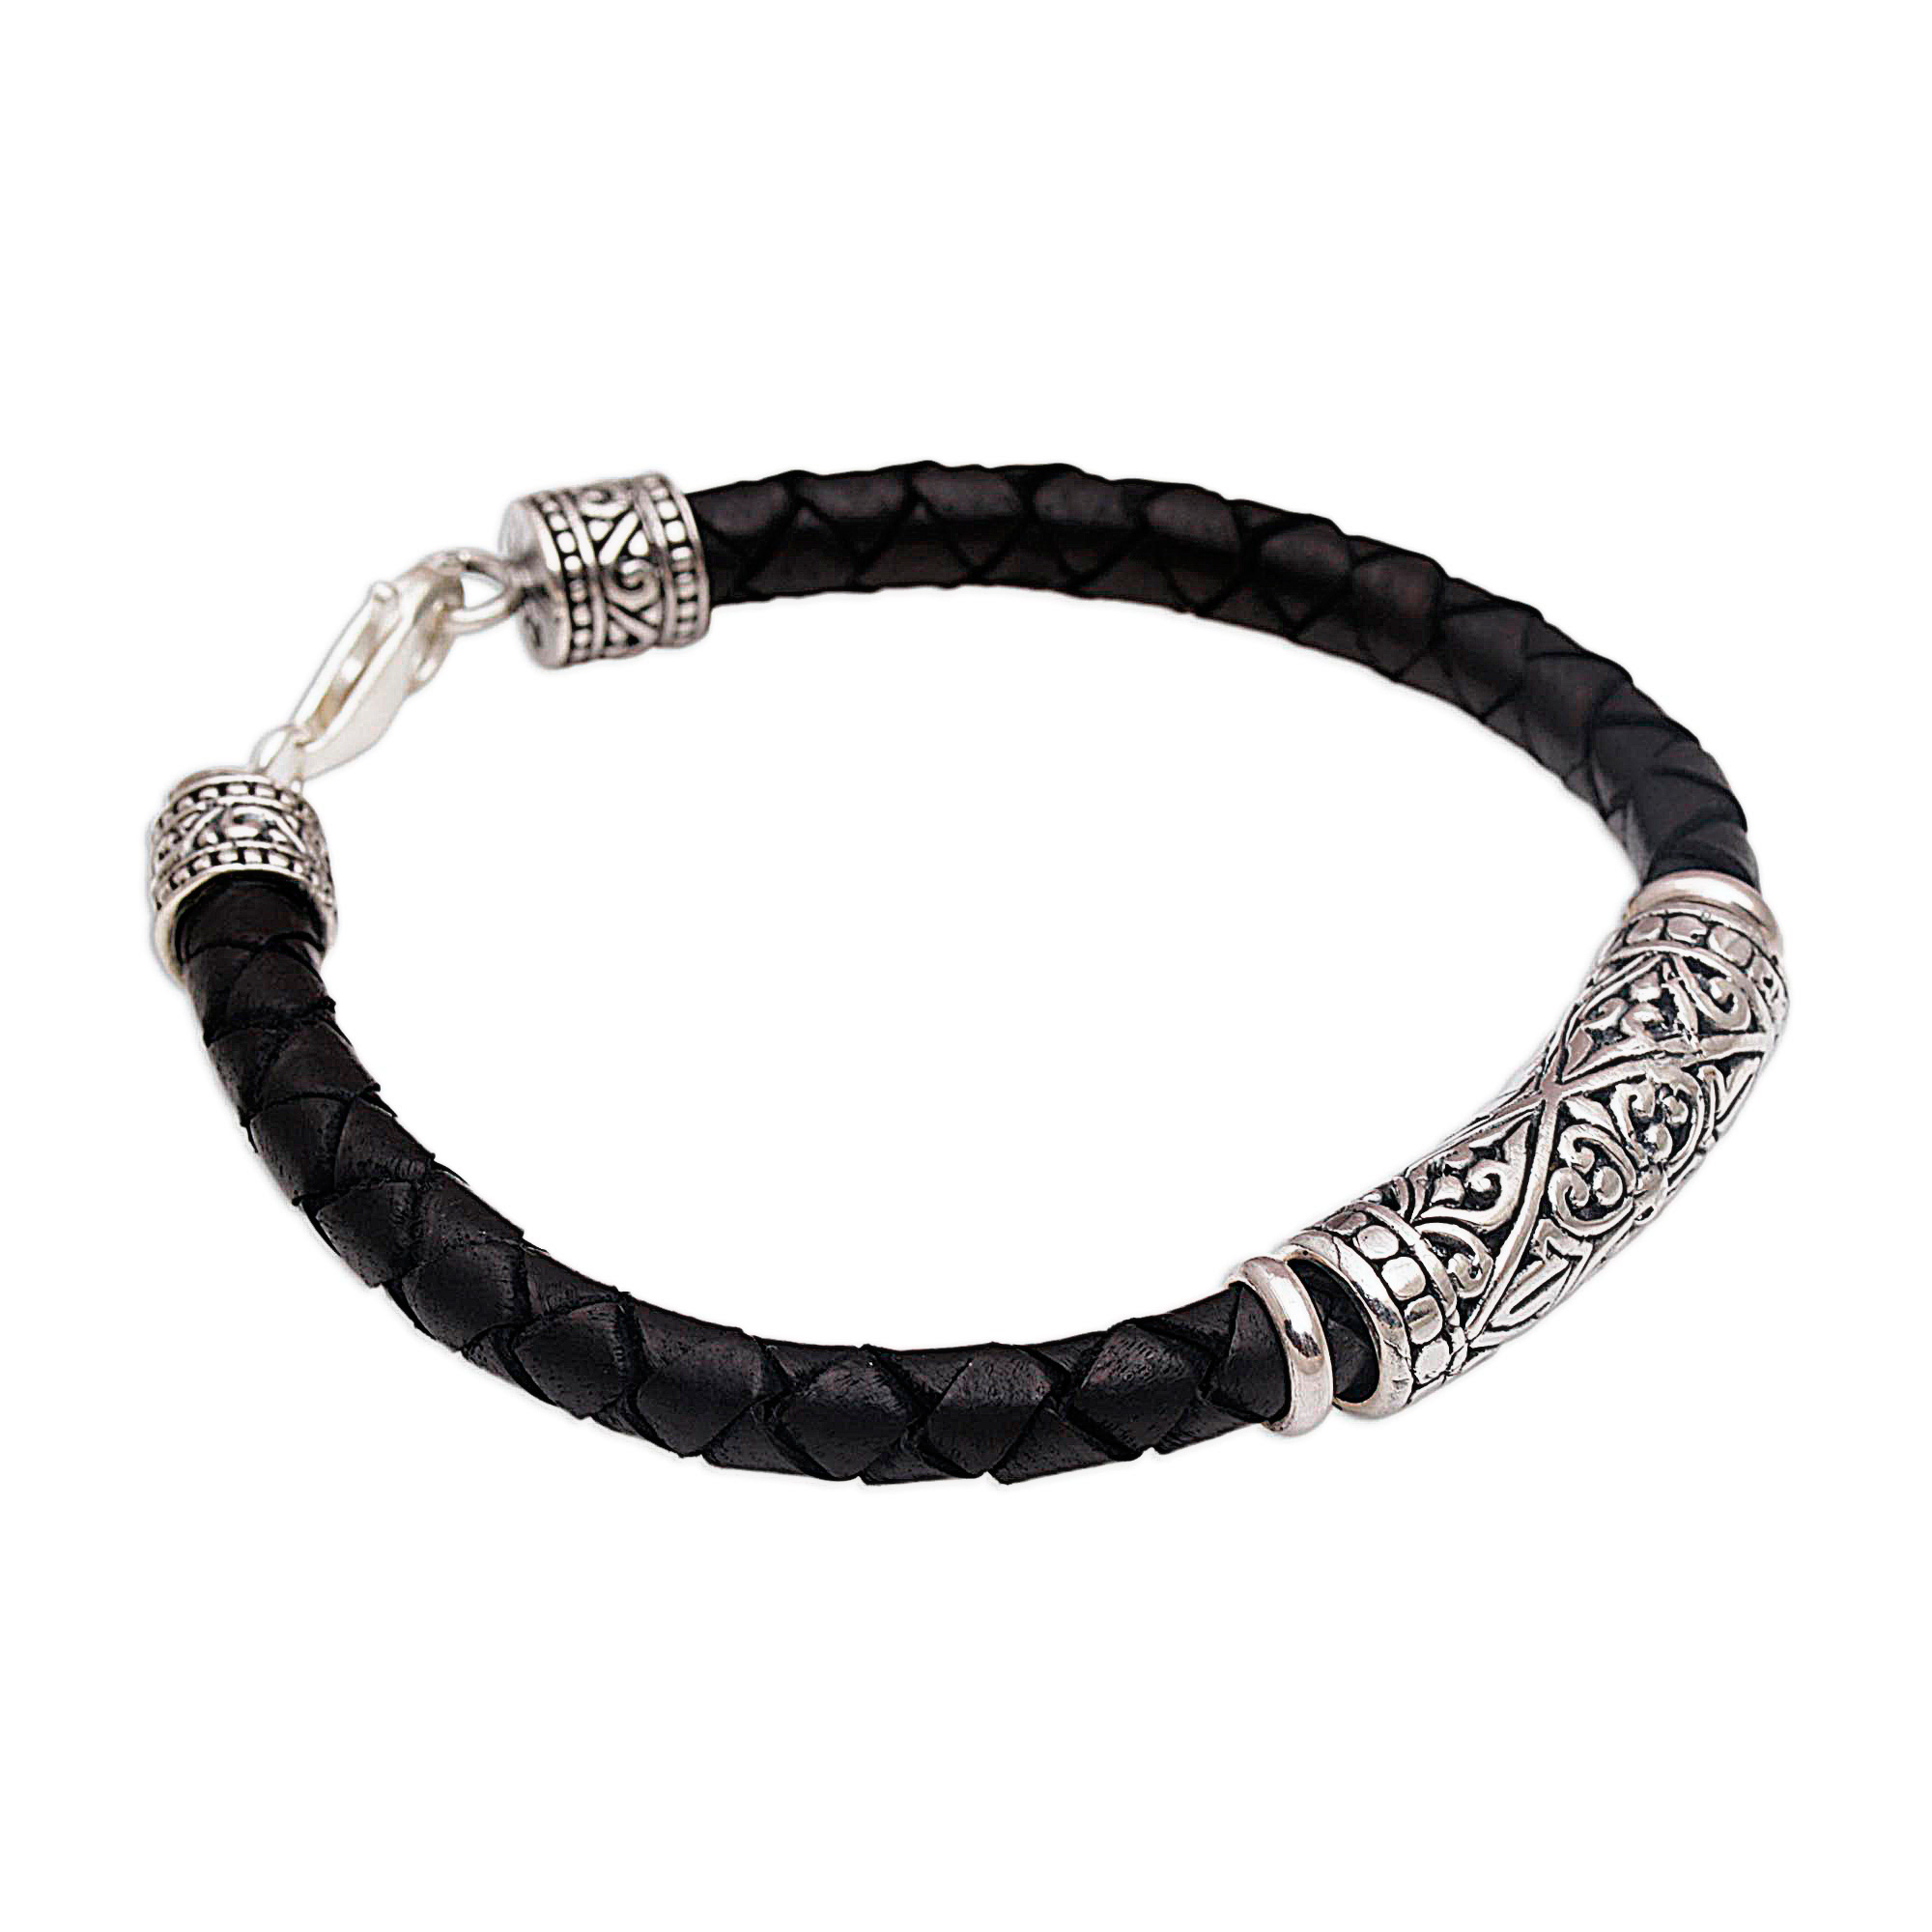 Handmade Black Leather and Sterling Silver Bracelet - Lost Kingdom | NOVICA